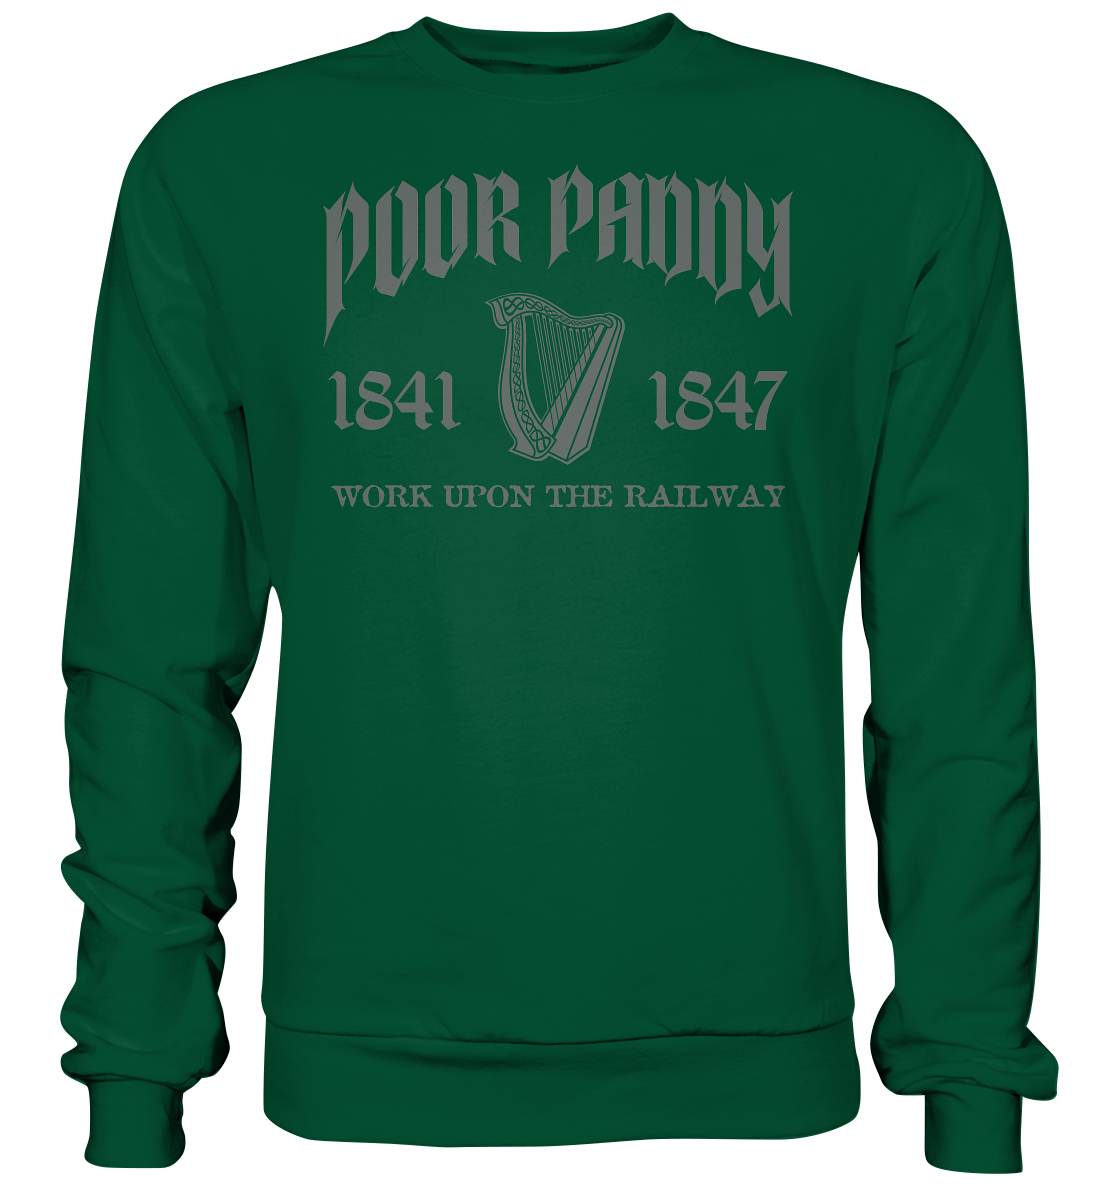 Poor Paddy "Work Upon The Railway" - Basic Sweatshirt